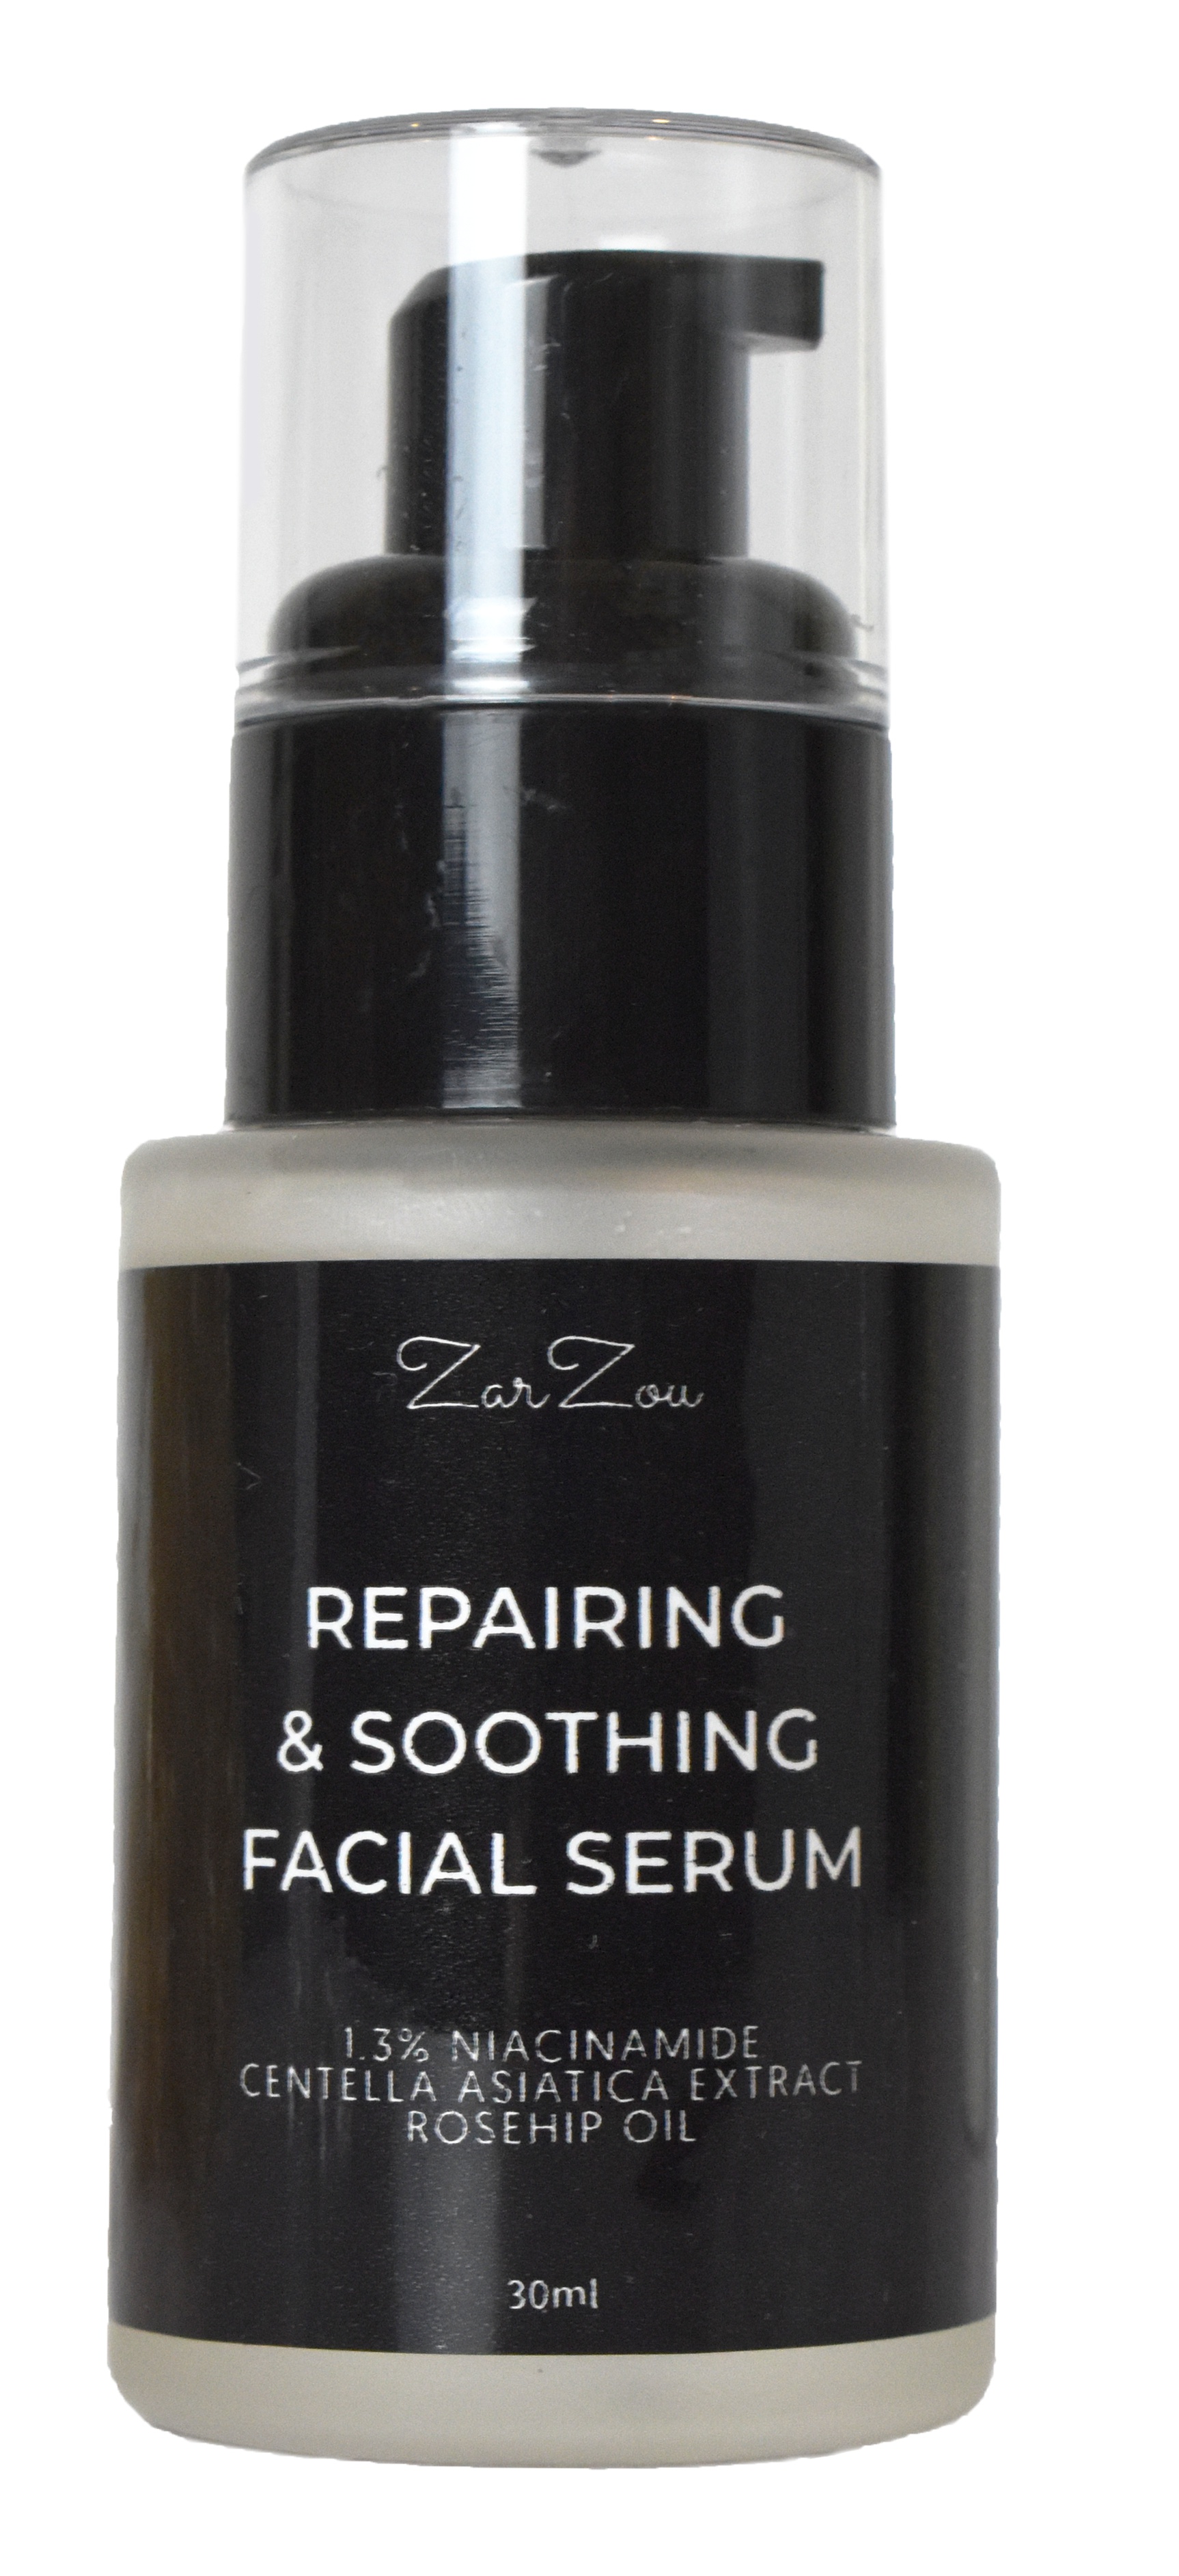 ZARZOU Repairing & Soothing Facial Serum